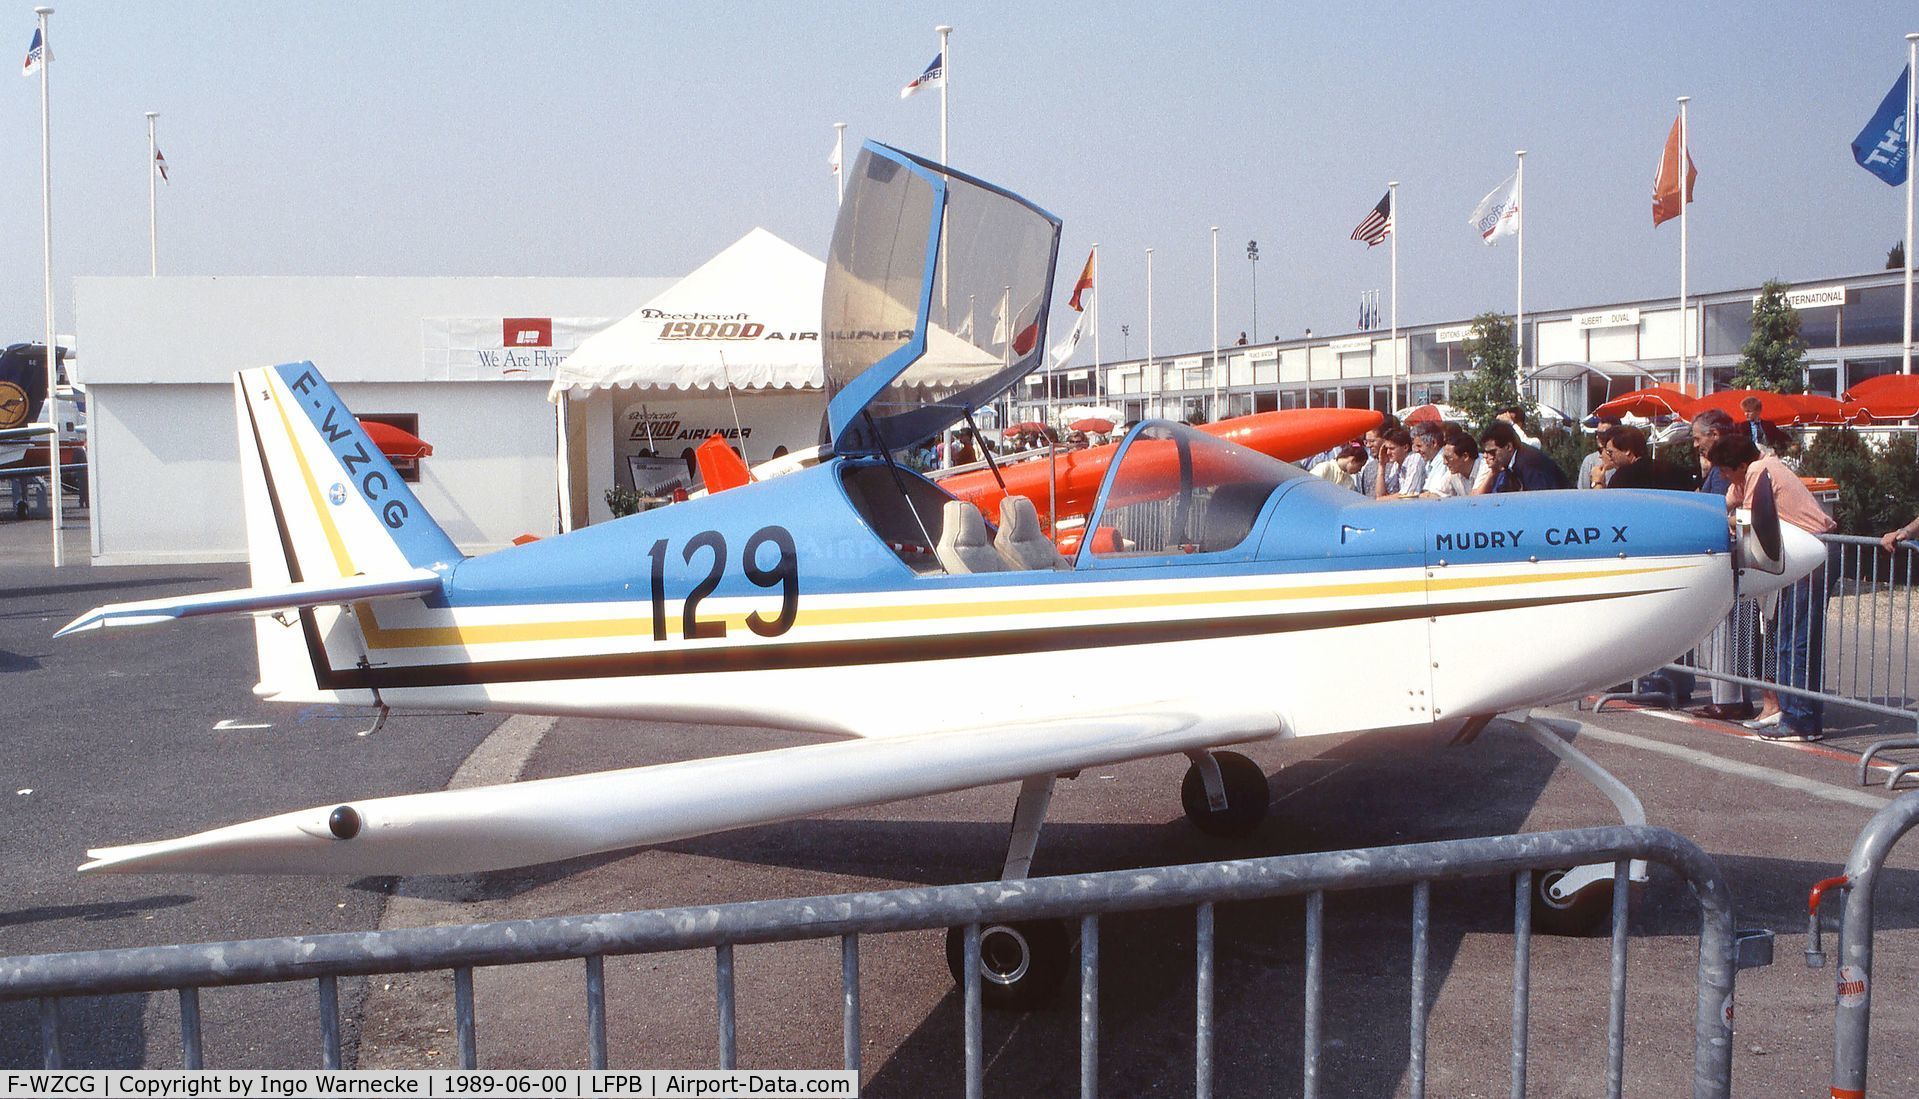 F-WZCG, Mudry CAP X C/N 02, Mudry CAP X (second prototype) at the Aerosalon 1989 Paris